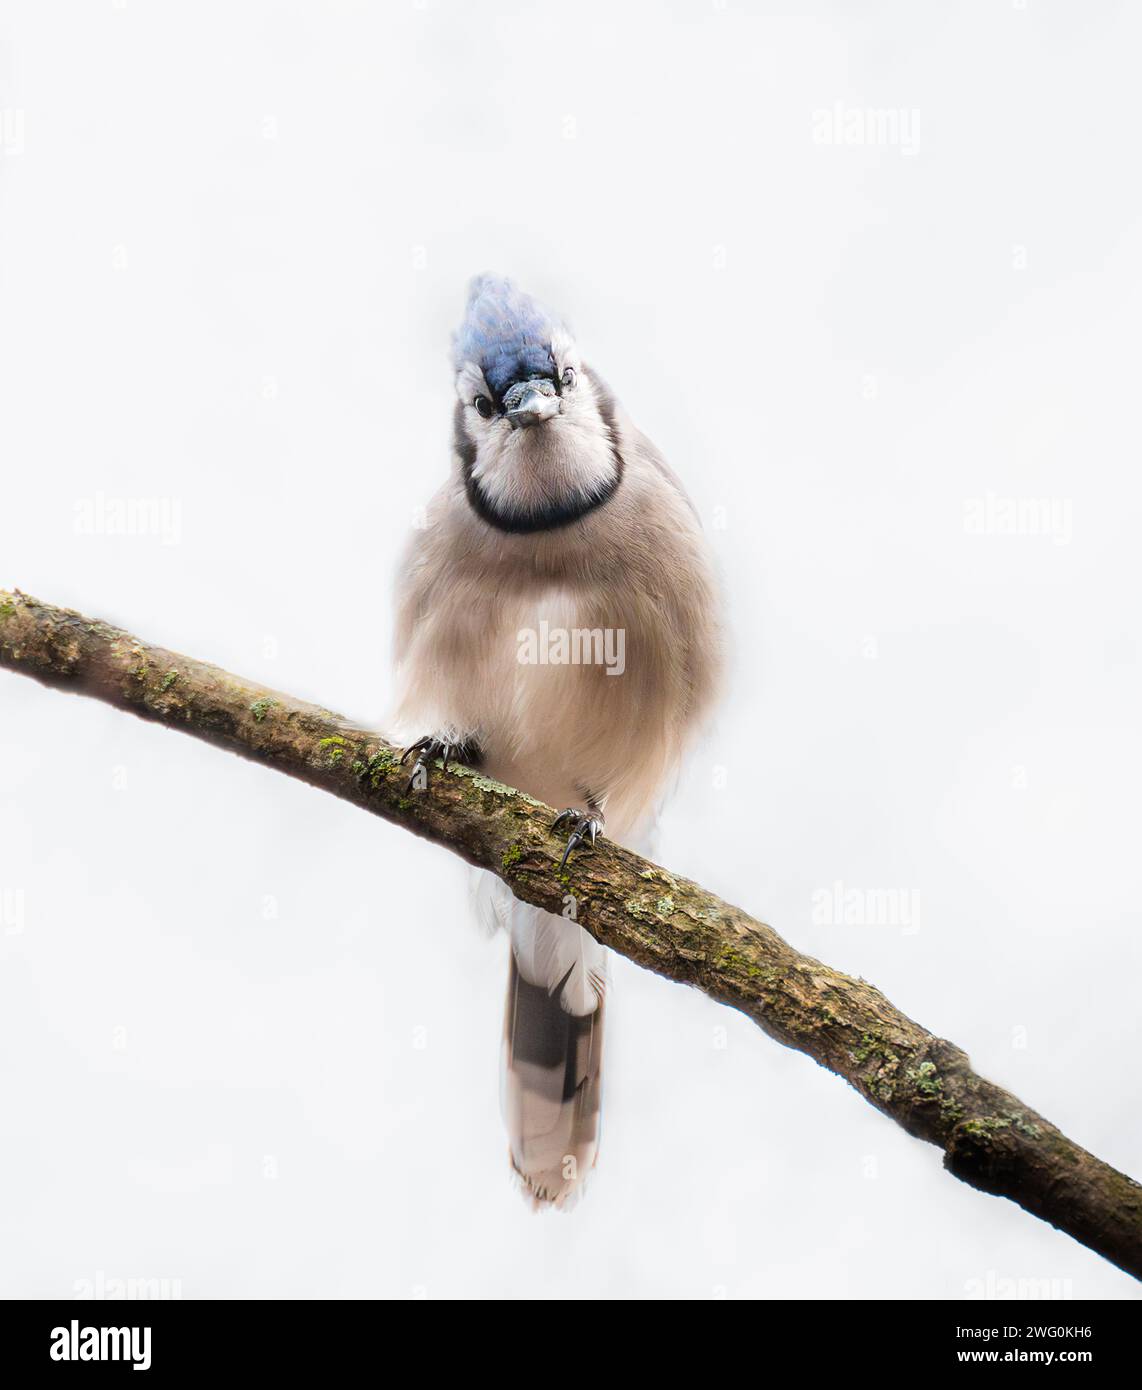 Gros plan de curieux oiseau bleu jay perché sur la branche regardant la caméra. Banque D'Images